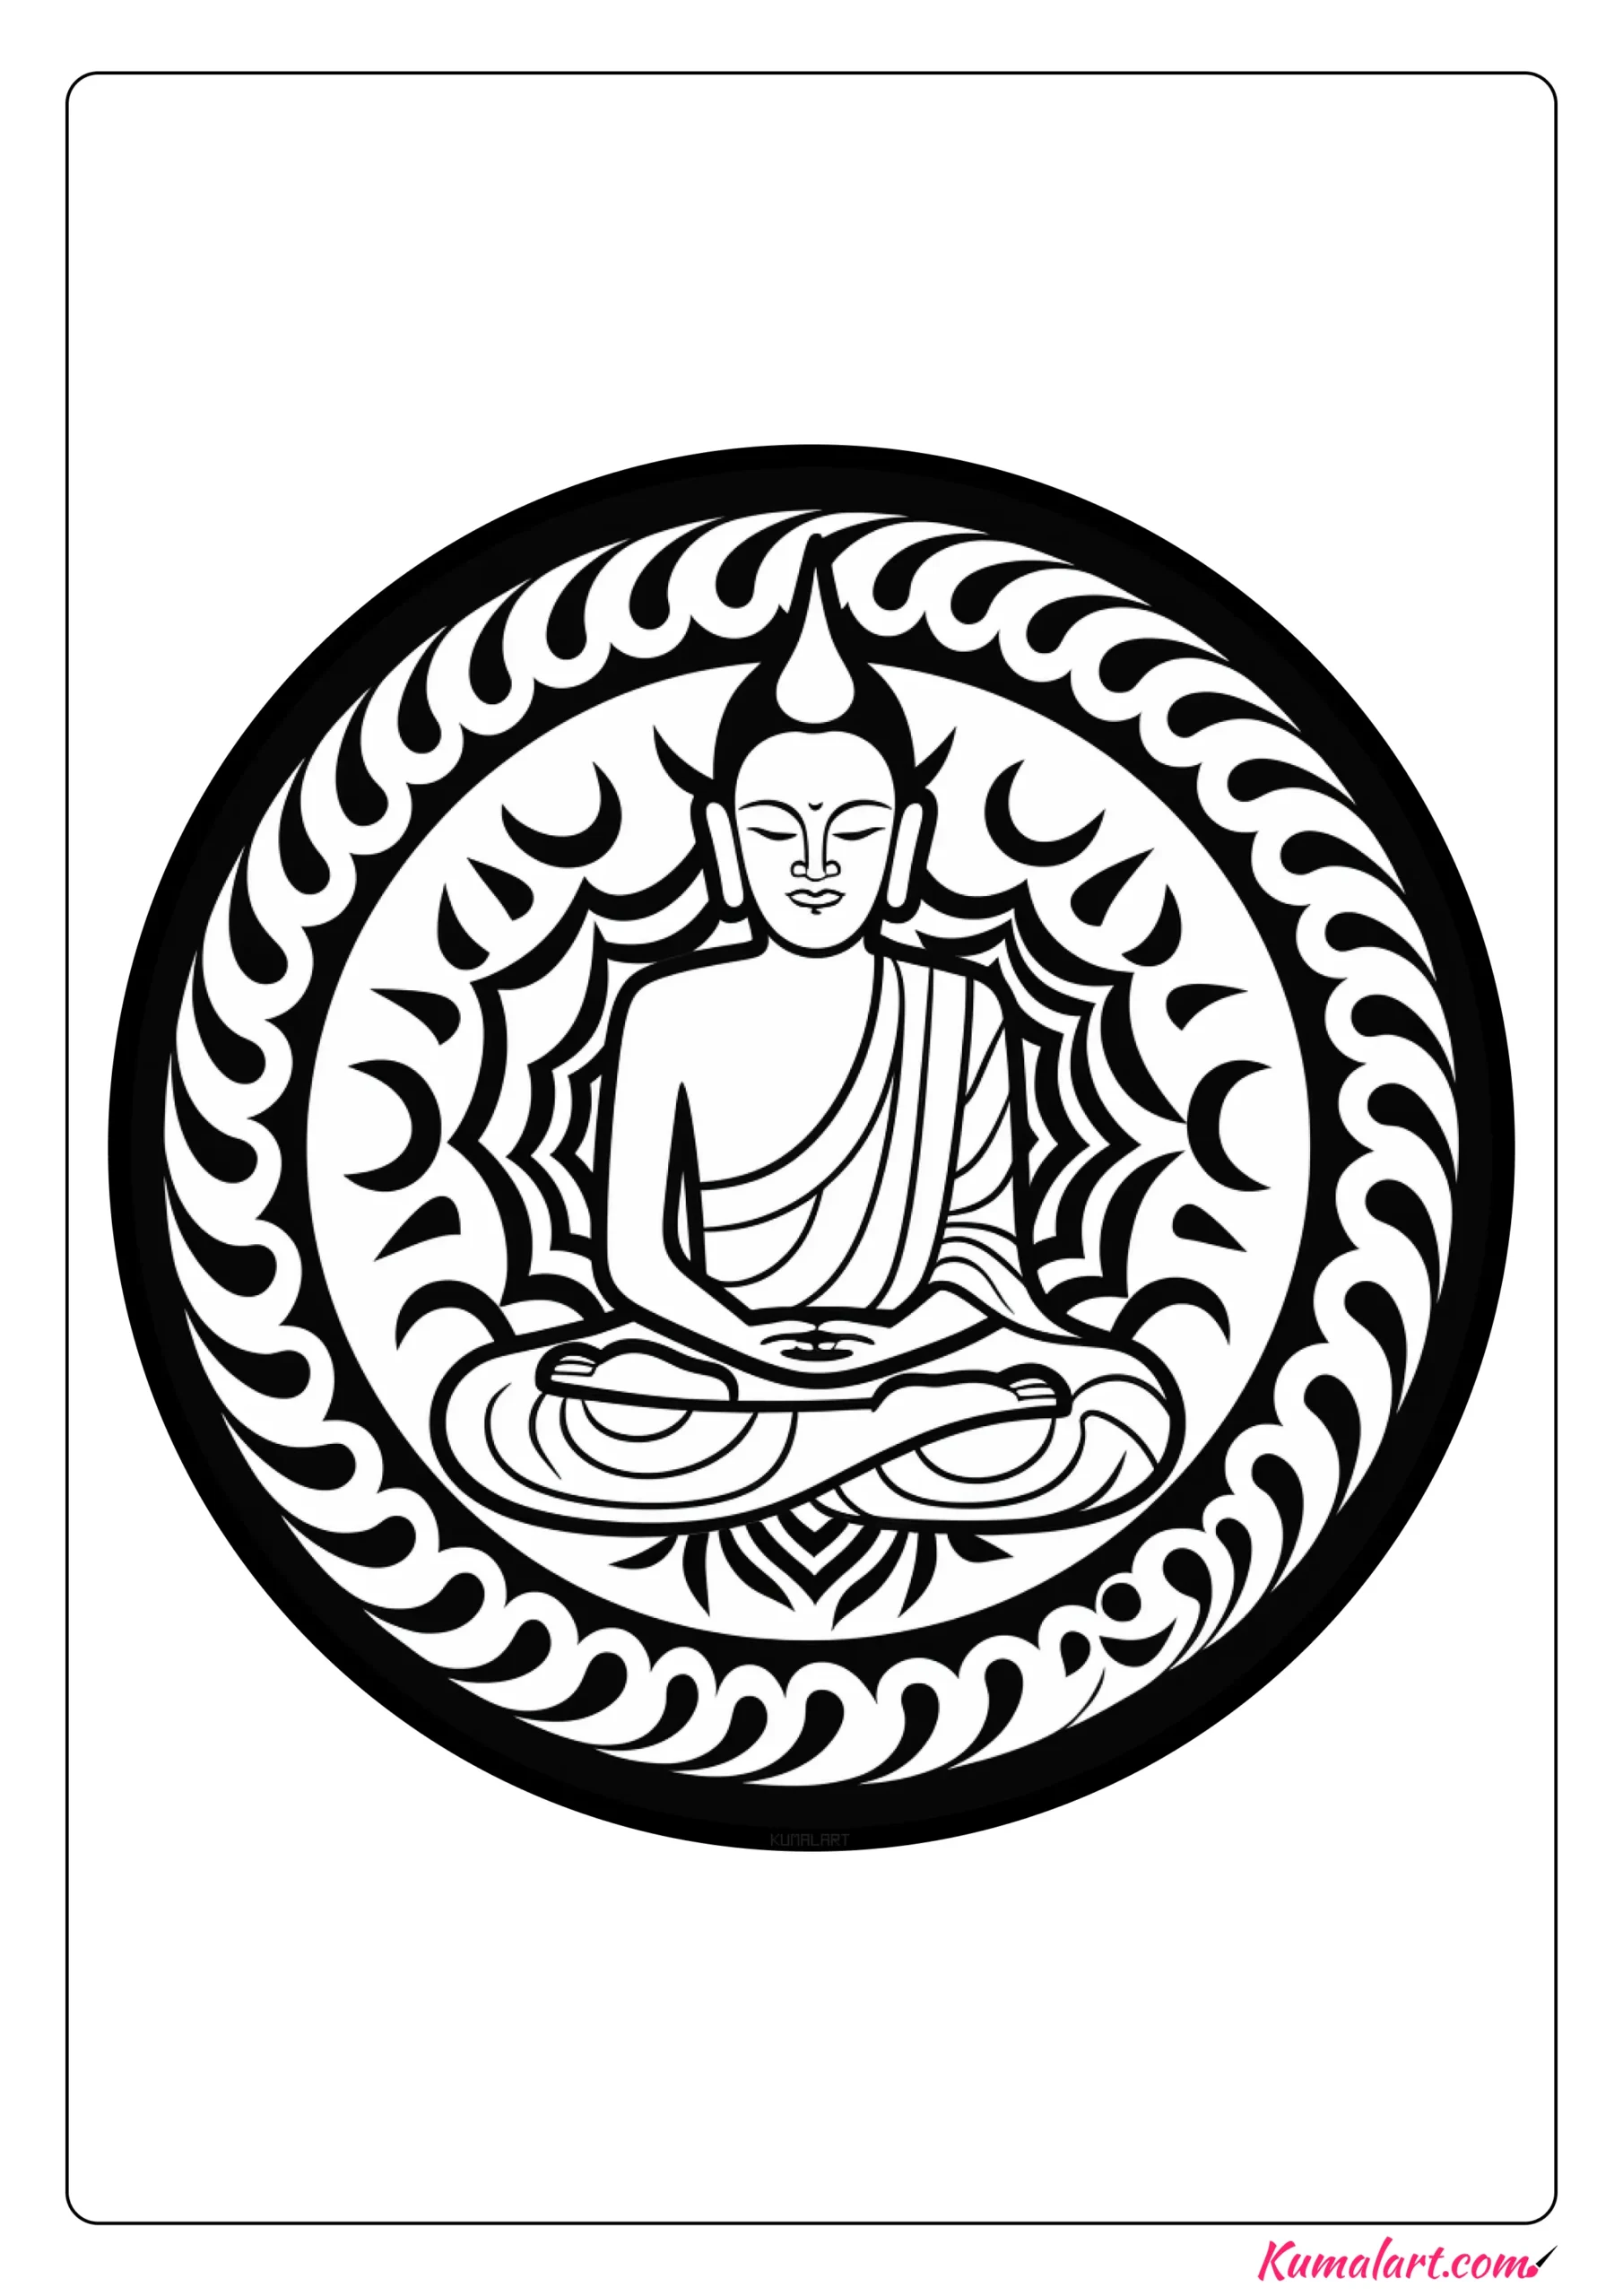 Spiritual Buddhist Mandala Coloring Page